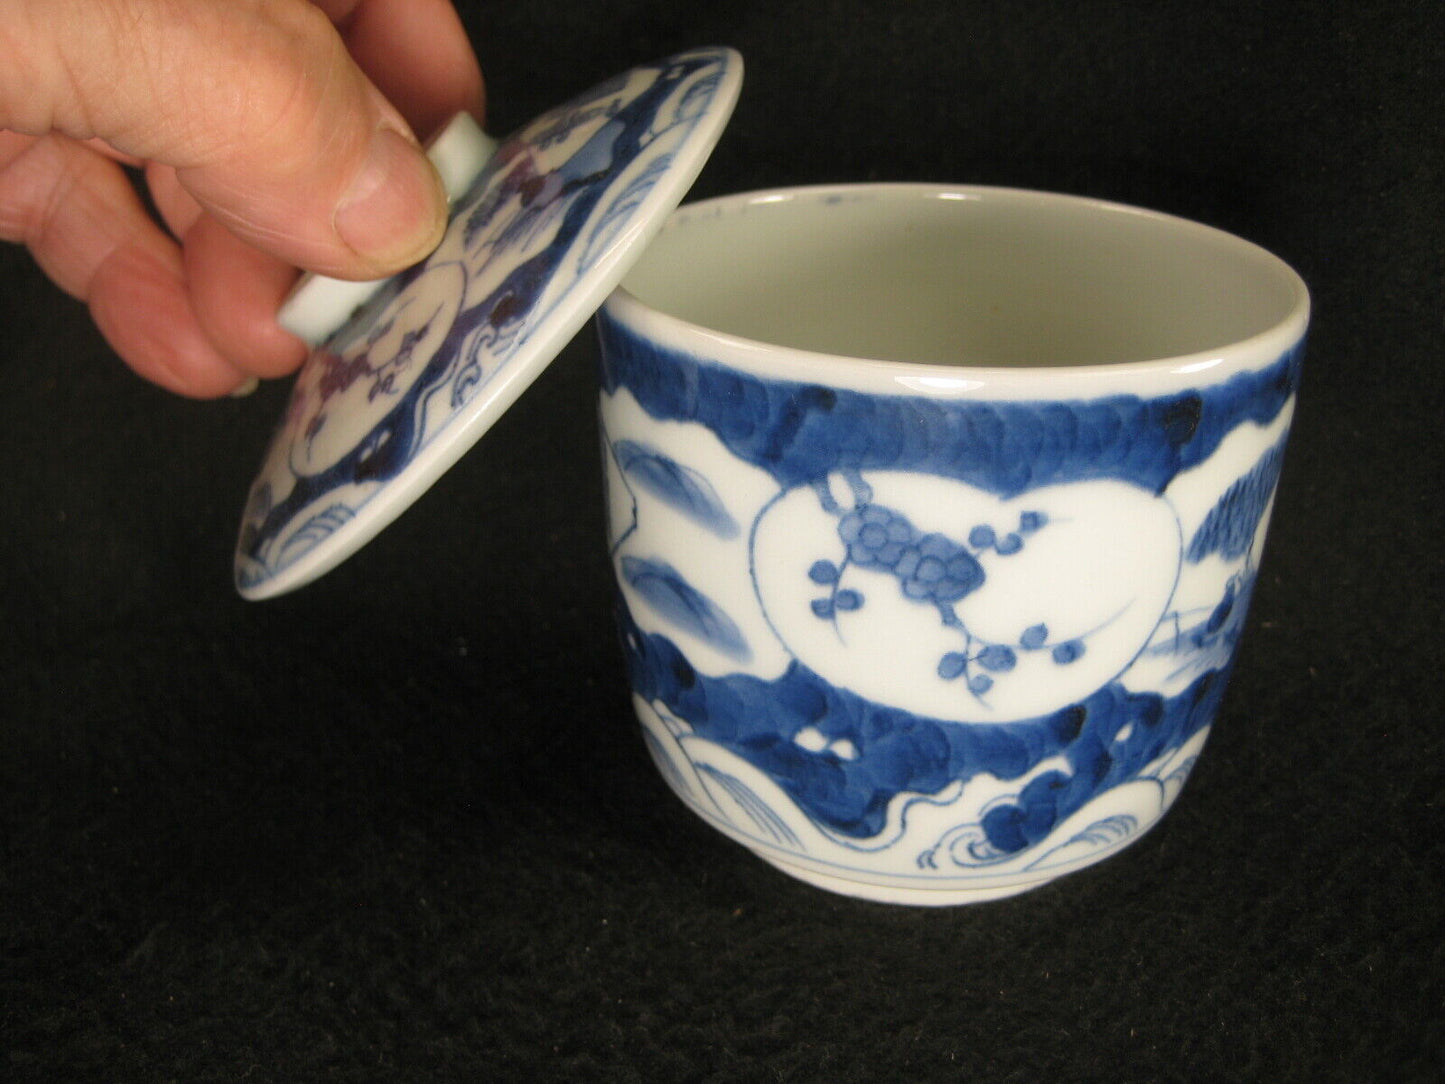 Antique Japanese Meiji Era C. 1880 Imari Ceramic Sencha Lidded Tea Cup Scenic